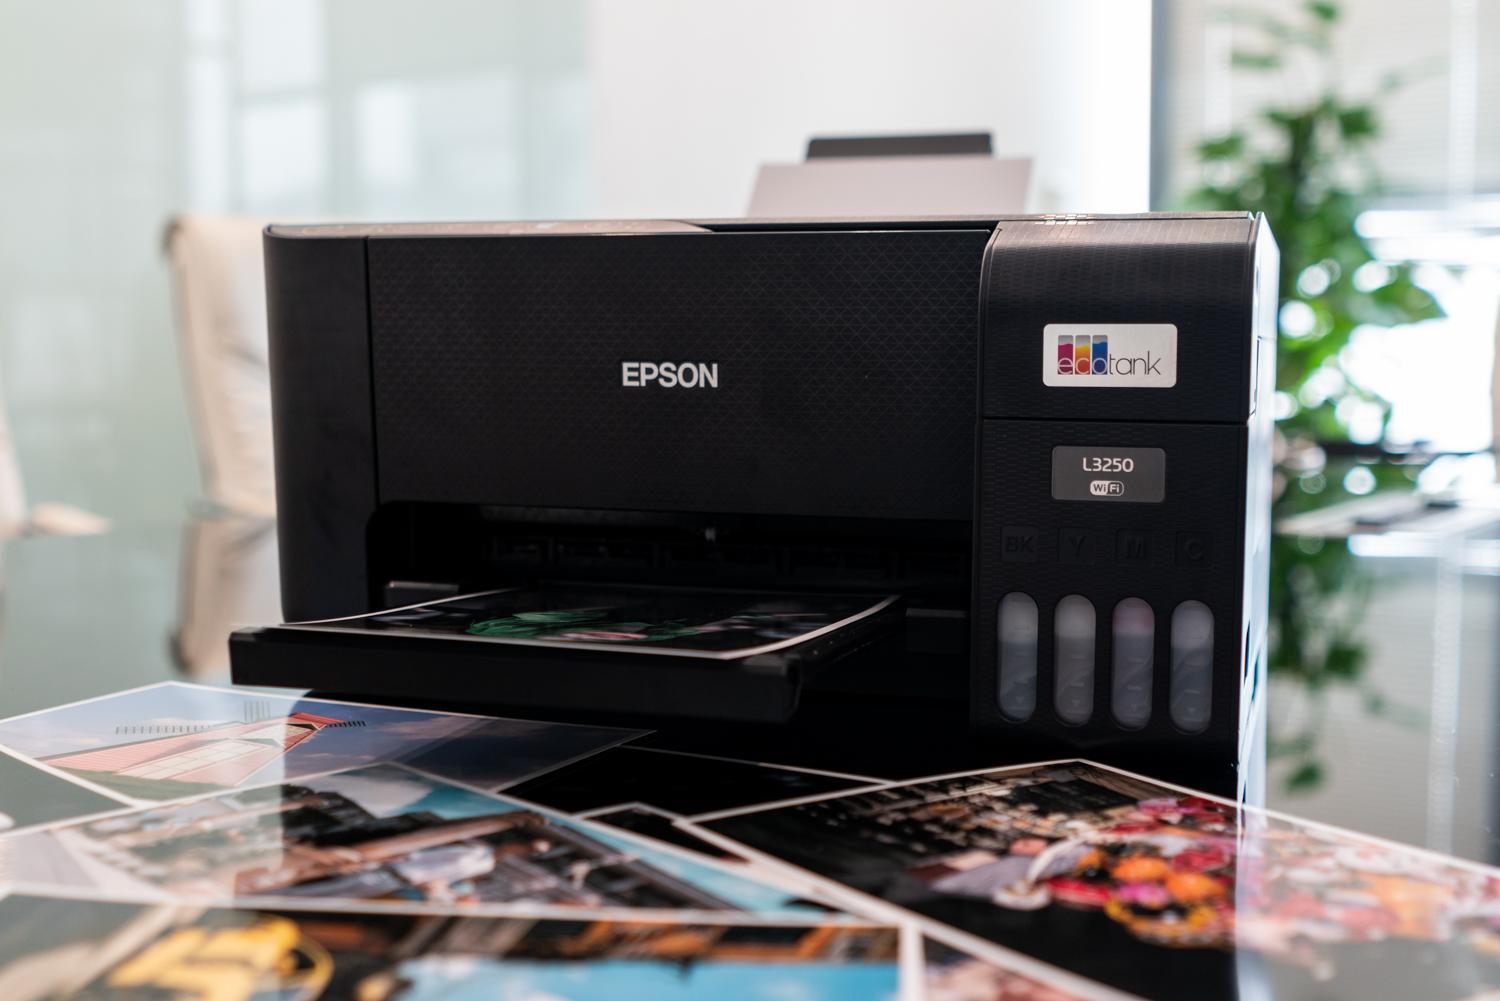 Khơi nguồn cảm hứng làm việc và học tập với máy in Epson EcoTank L3250 - Ảnh 1.